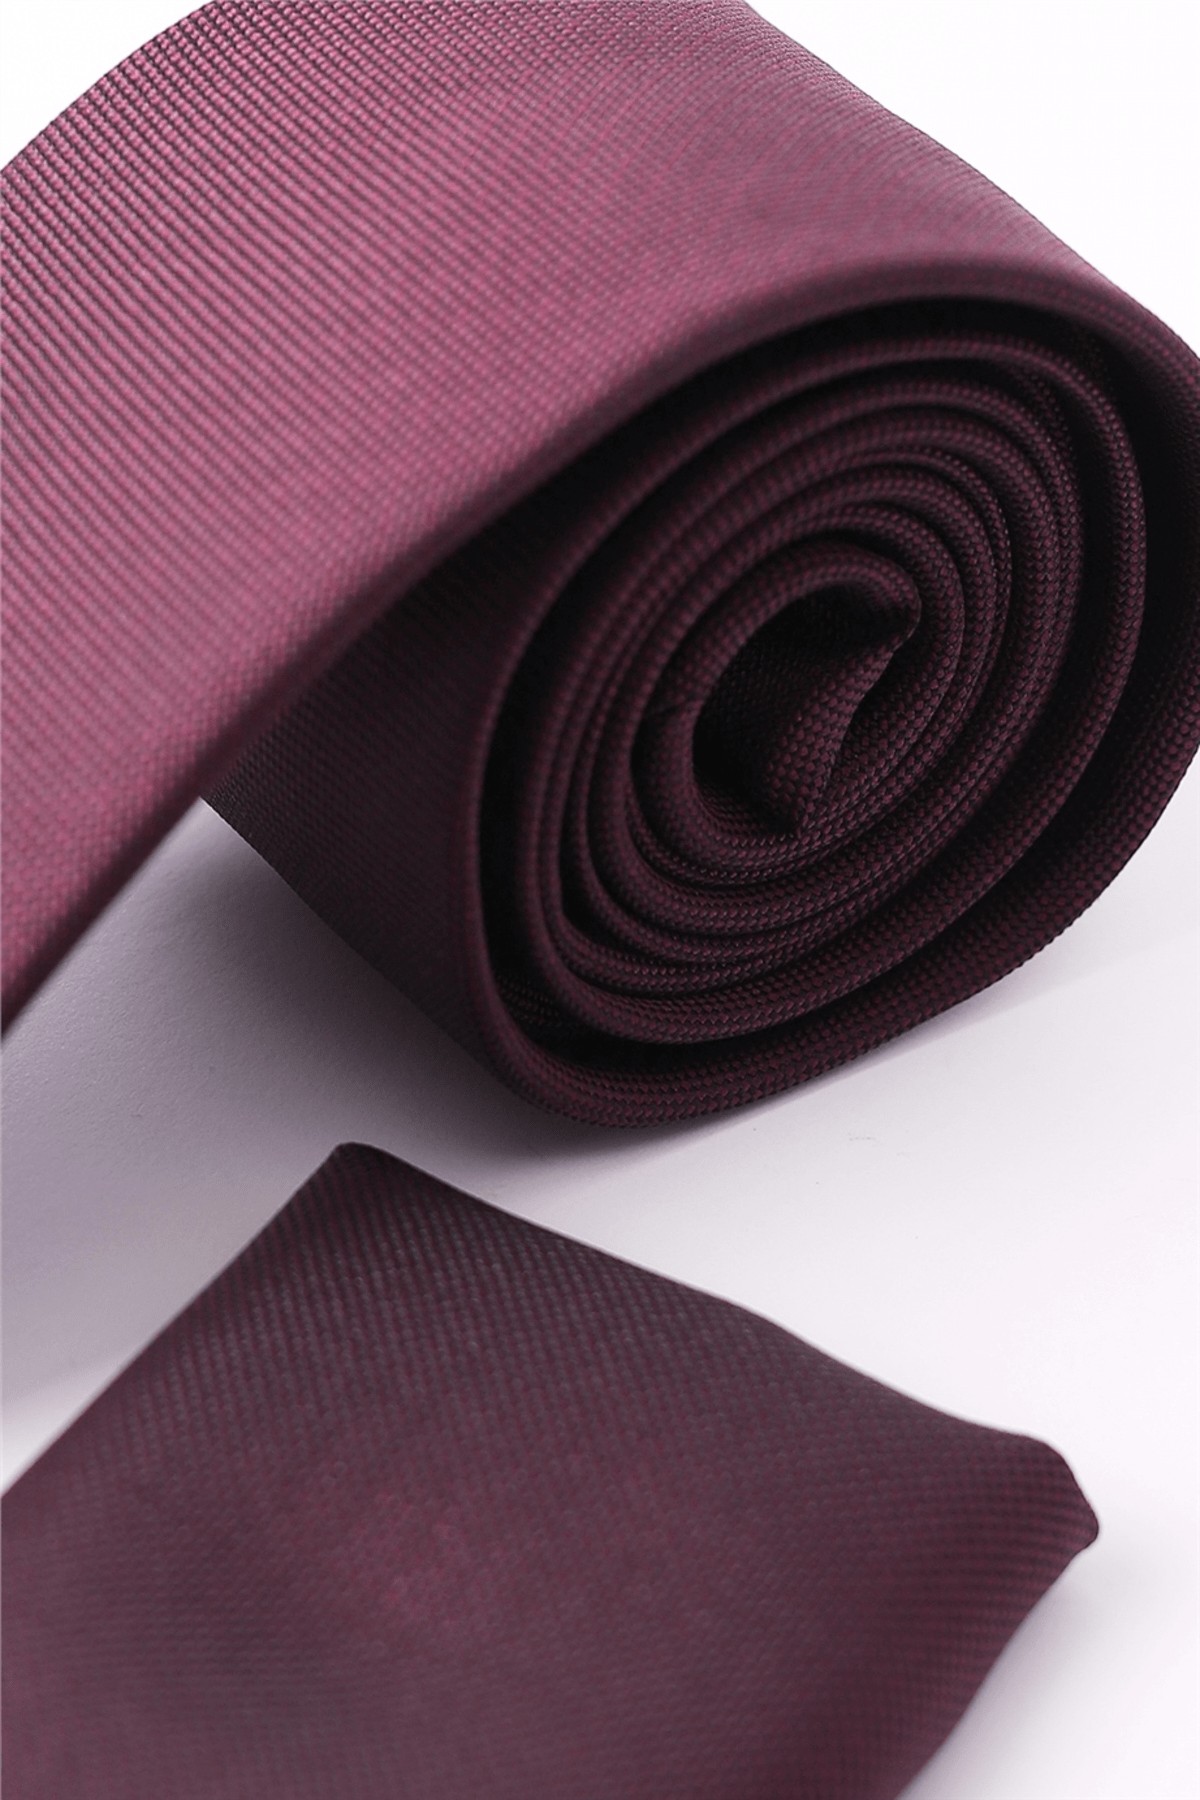 کراوات مردانه ساده با دستمال جیبی